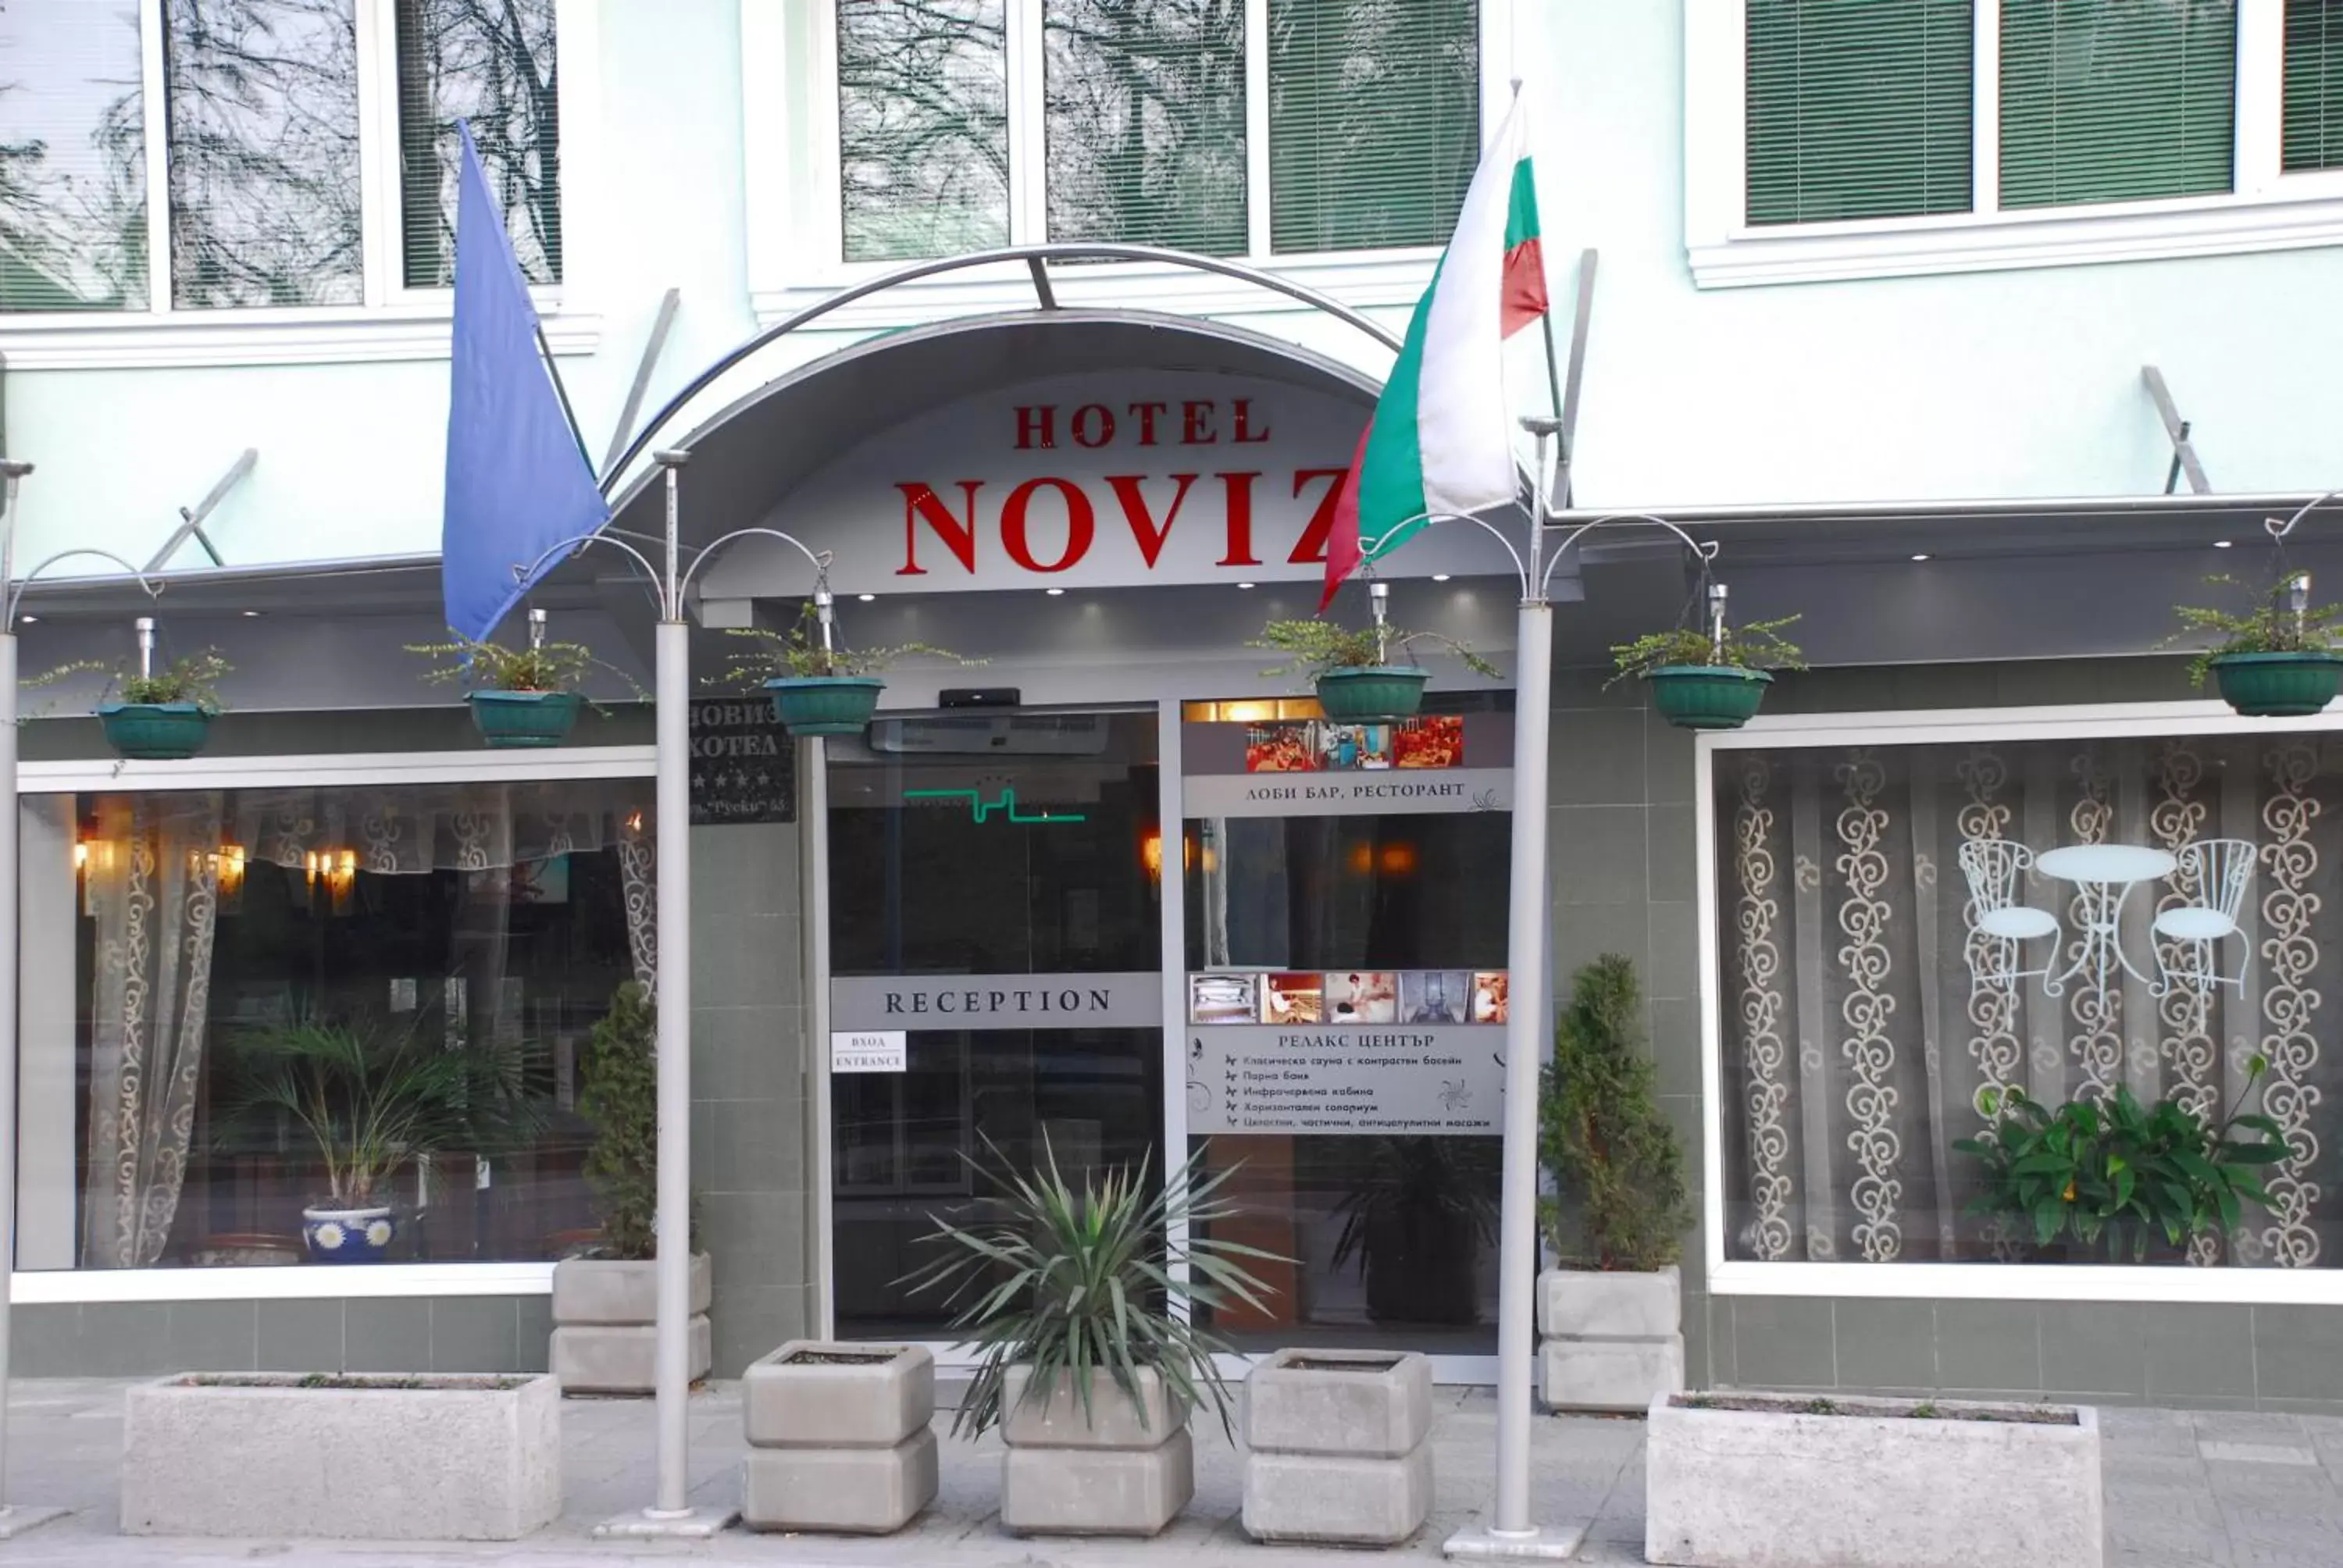 Facade/entrance in Noviz Hotel